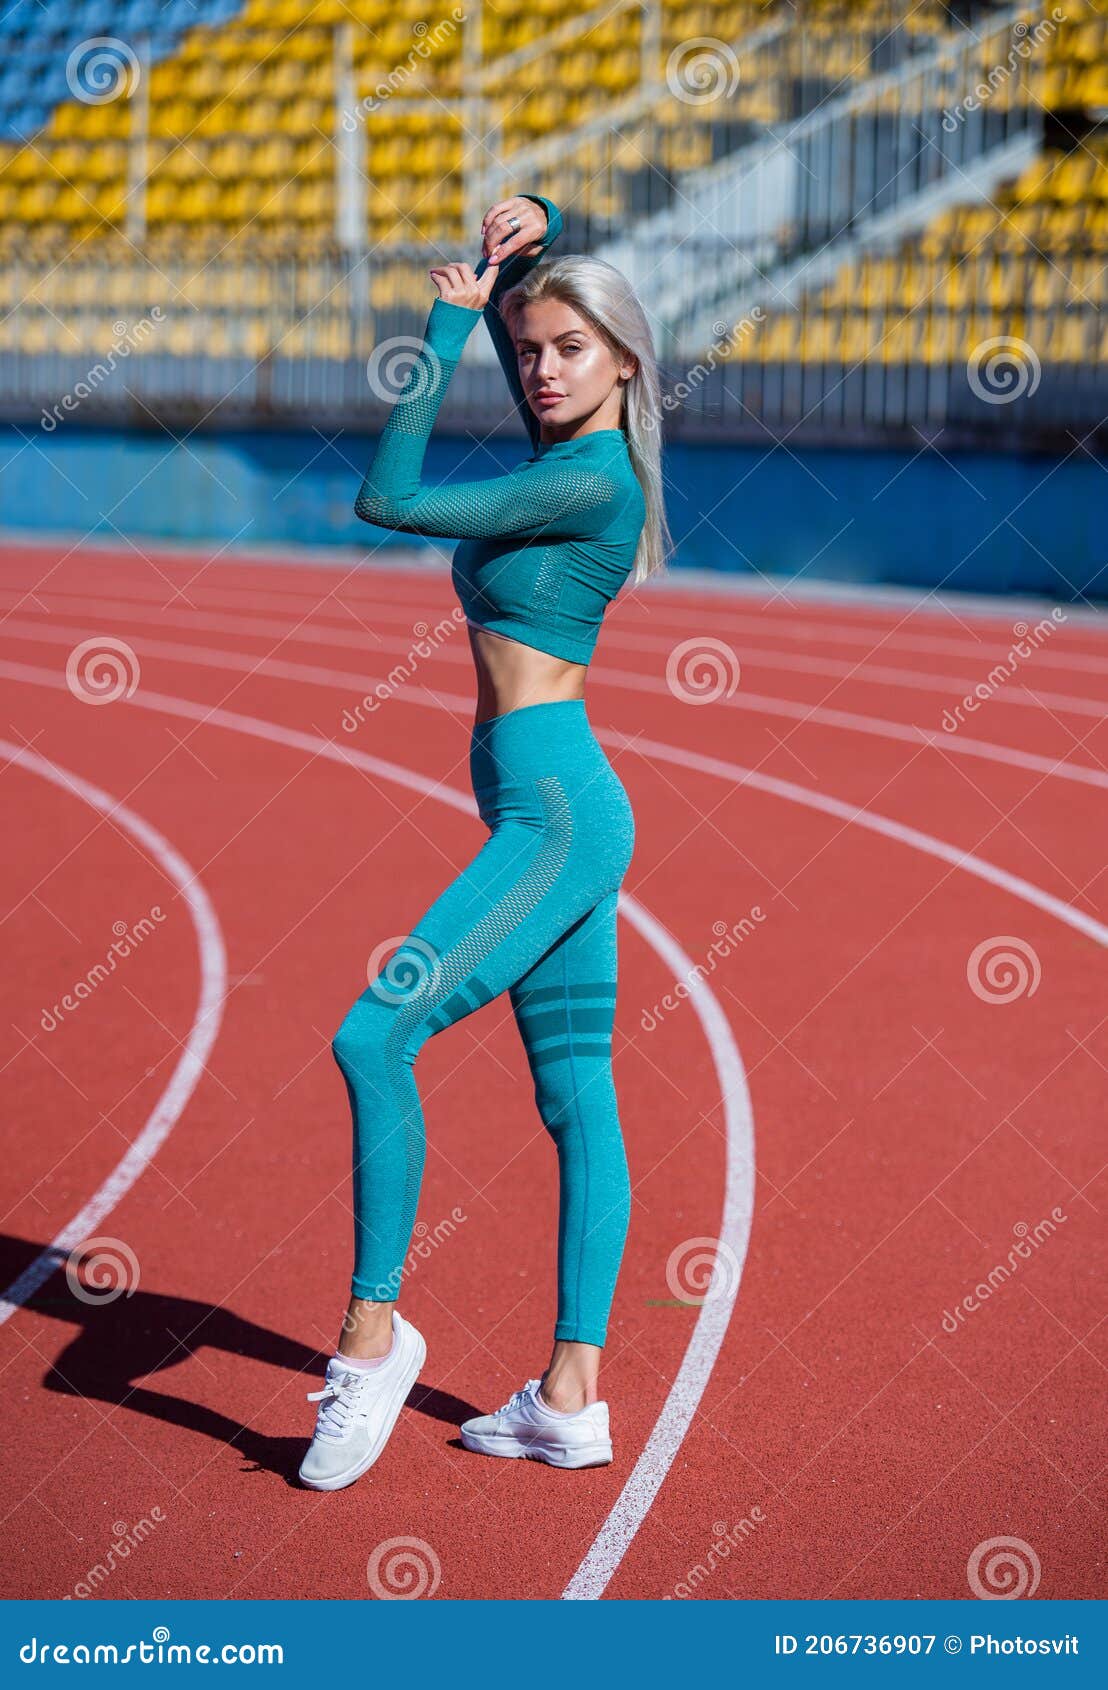 Perfección Pura. Sano Y Deportivo. Mujer Sexy De Fitness En Ropa Deportiva.  Mujer Atlética Con Caderas Sensuales En El Estadio. Mu Imagen de archivo -  Imagen de deporte, vago: 206736907